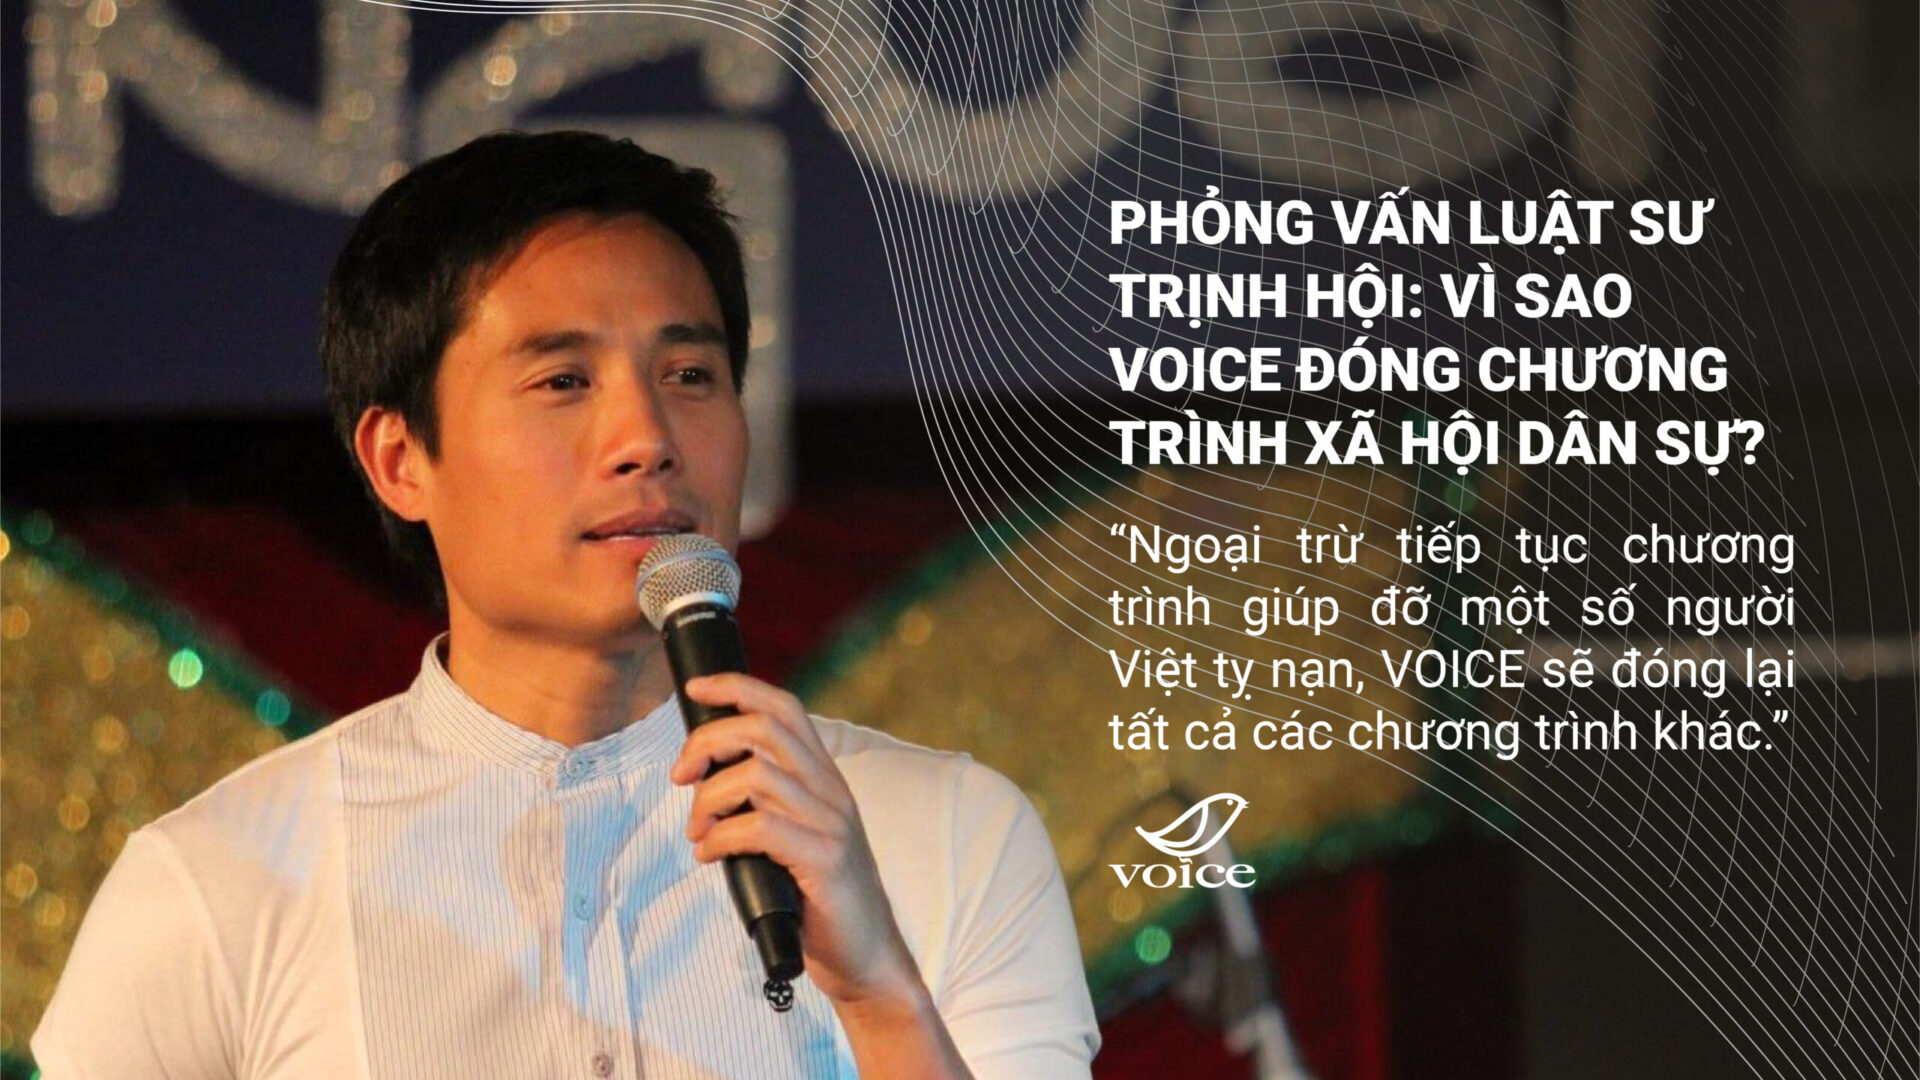 Phỏng vấn Luật sư Trịnh Hội: Vì sao VOICE đóng chương trình Xã hội Dân sự?